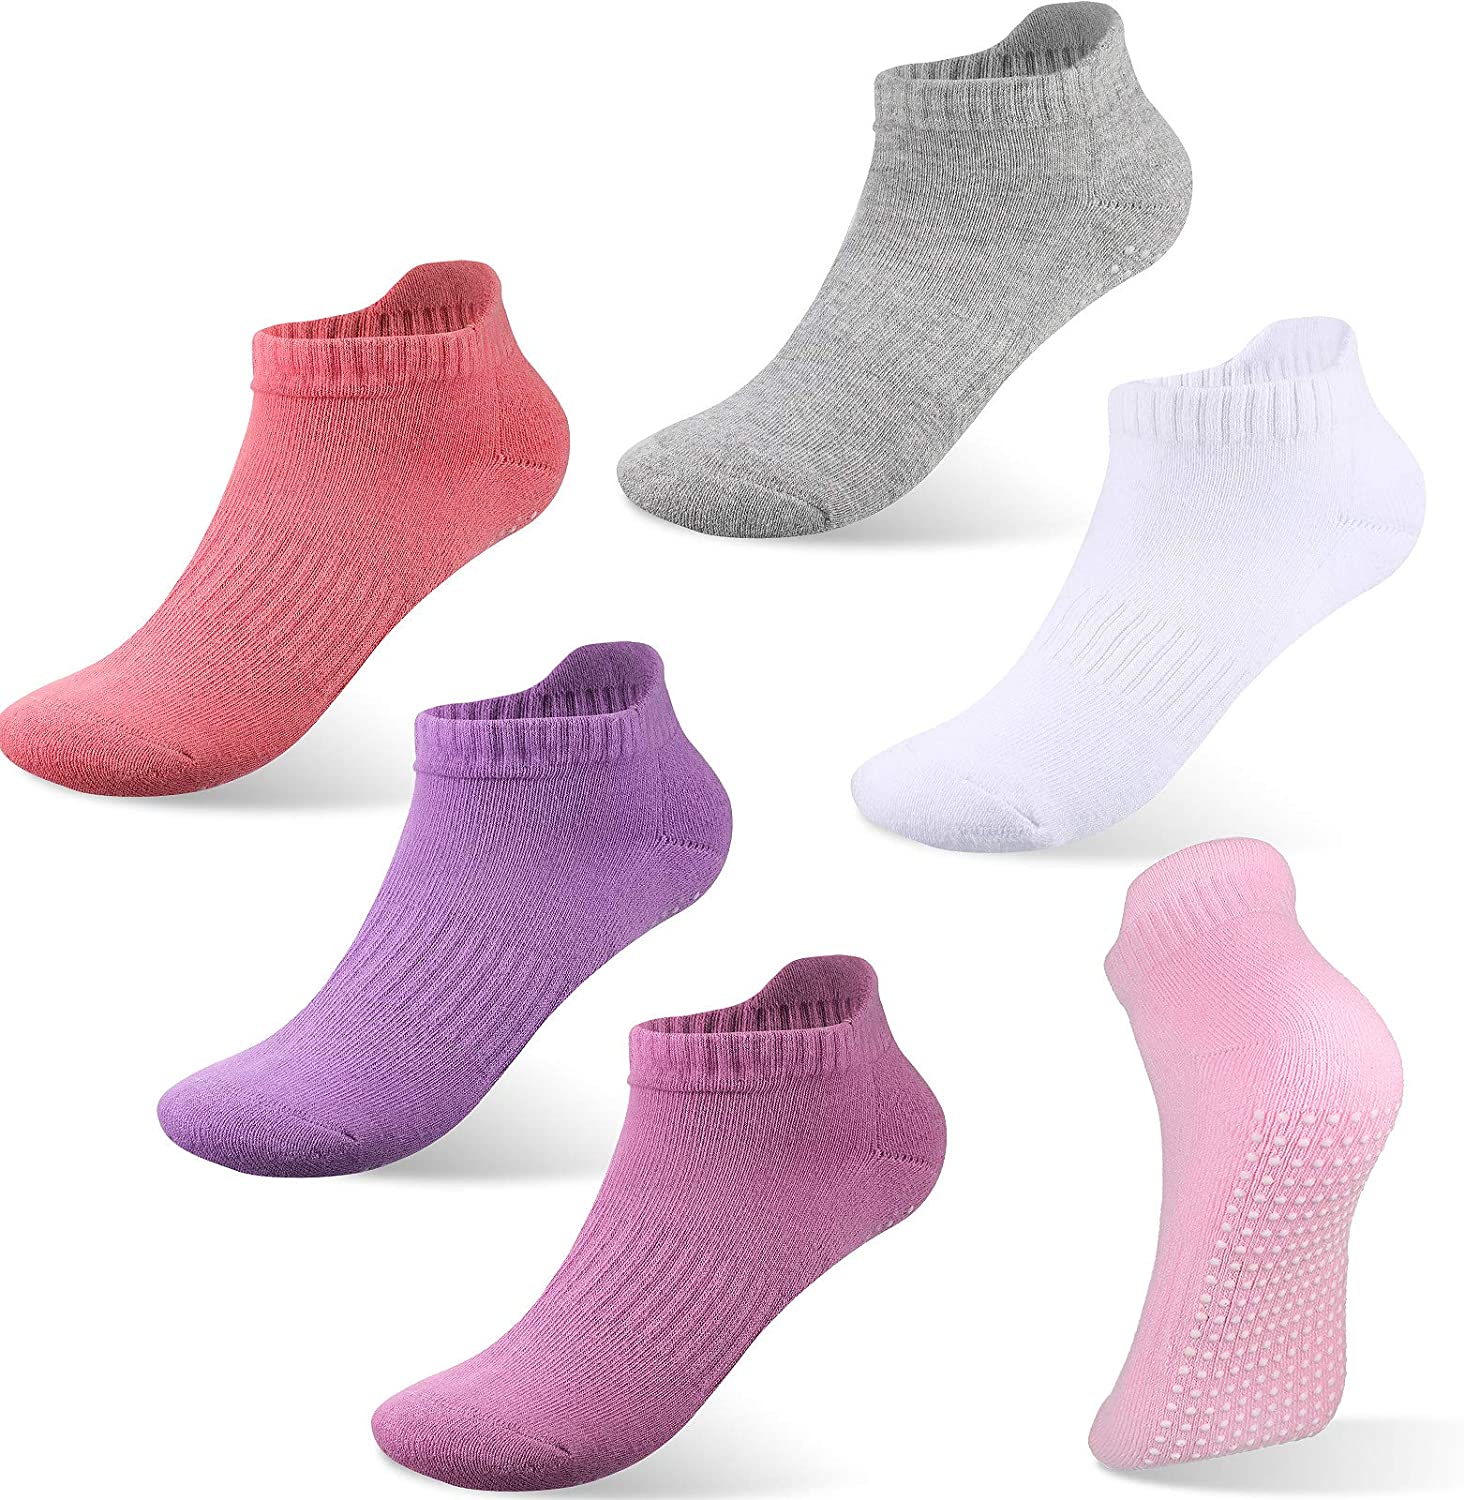 6 pares de calcetines antideslizantes para yoga y pilates